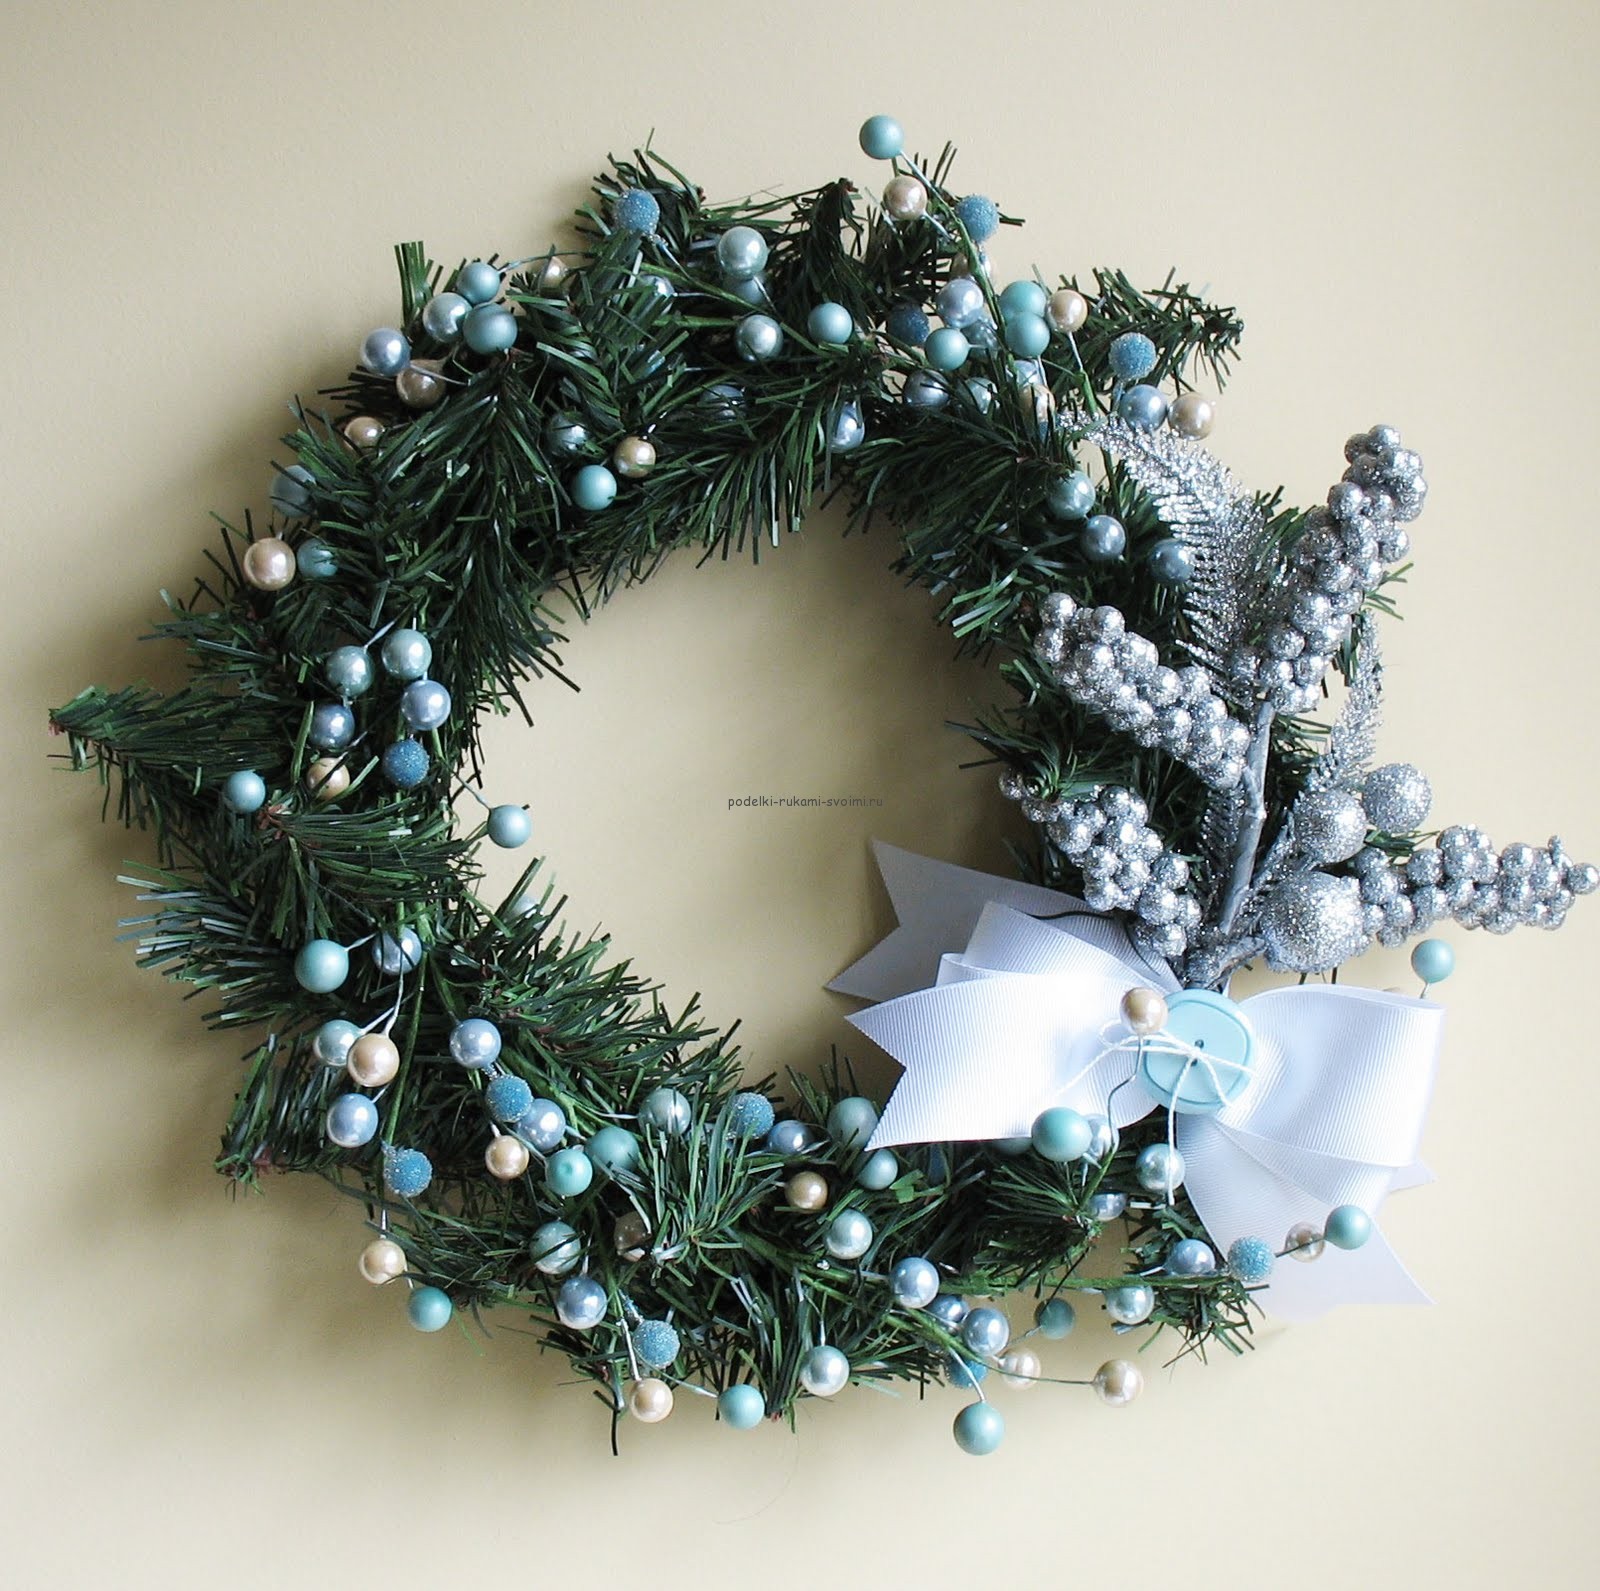 DIY Christmas wreaths